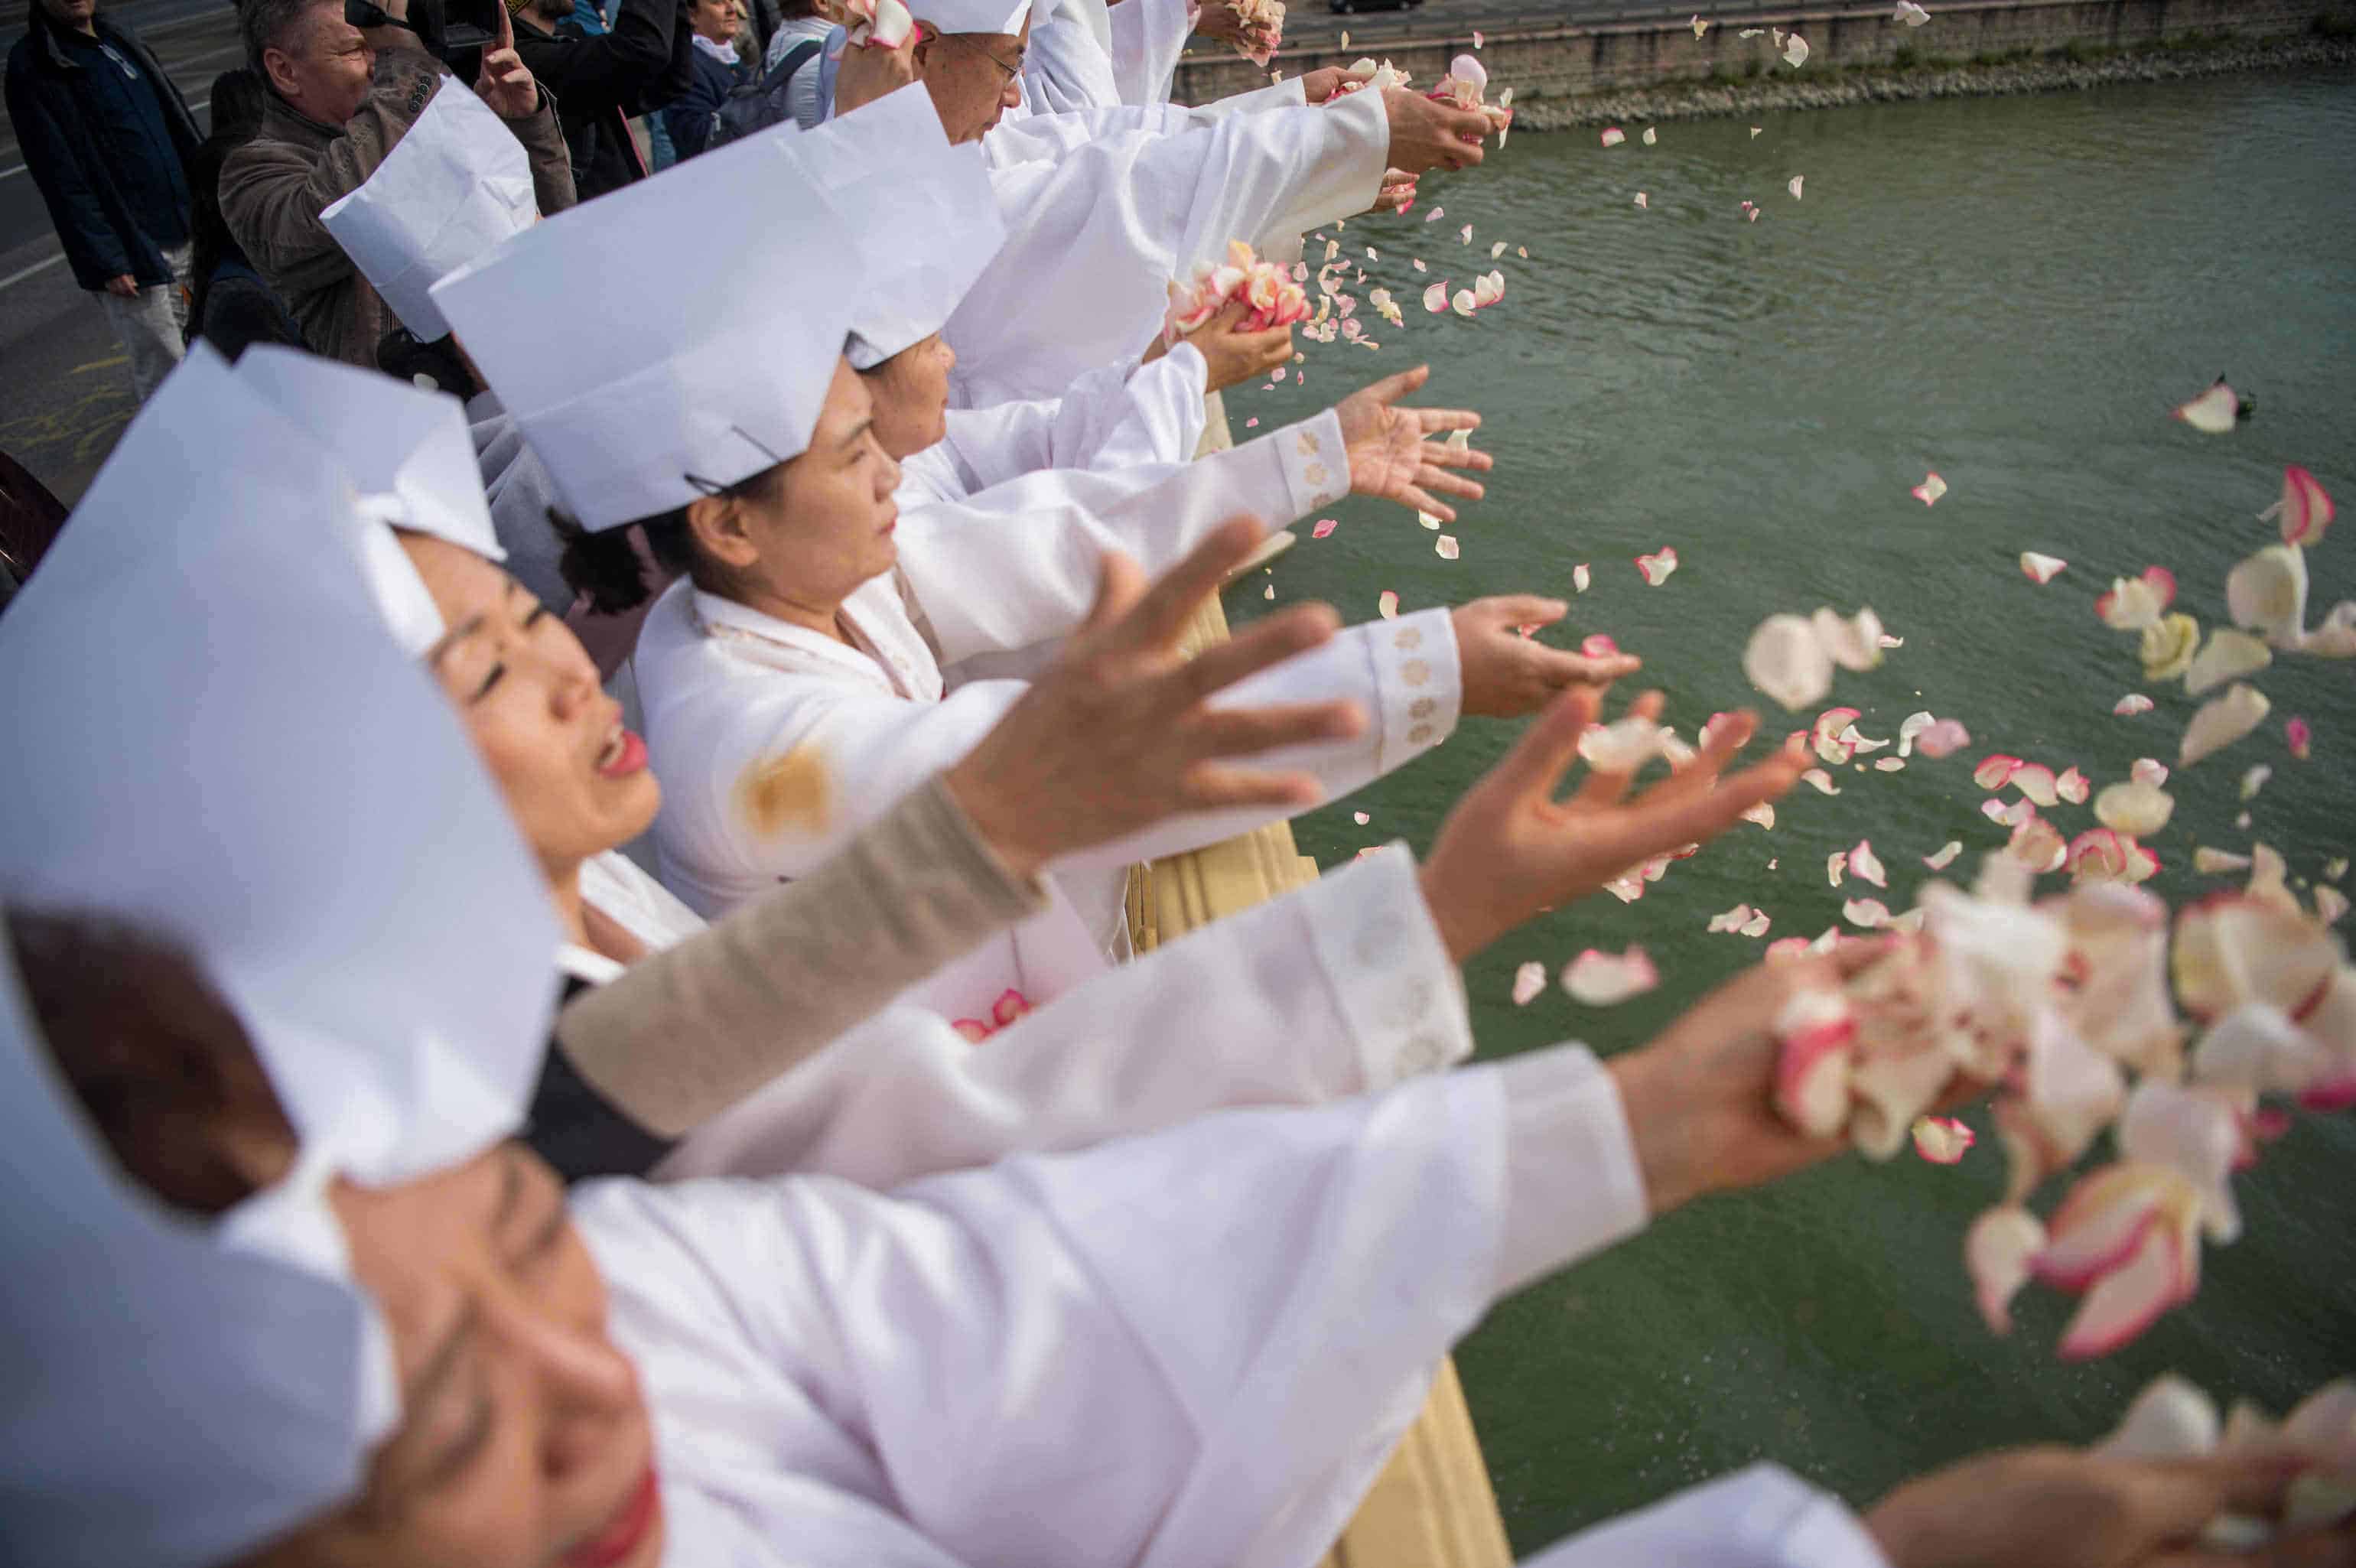 Collision avec un navire - Les victimes honorées par un service commémoratif traditionnel coréen